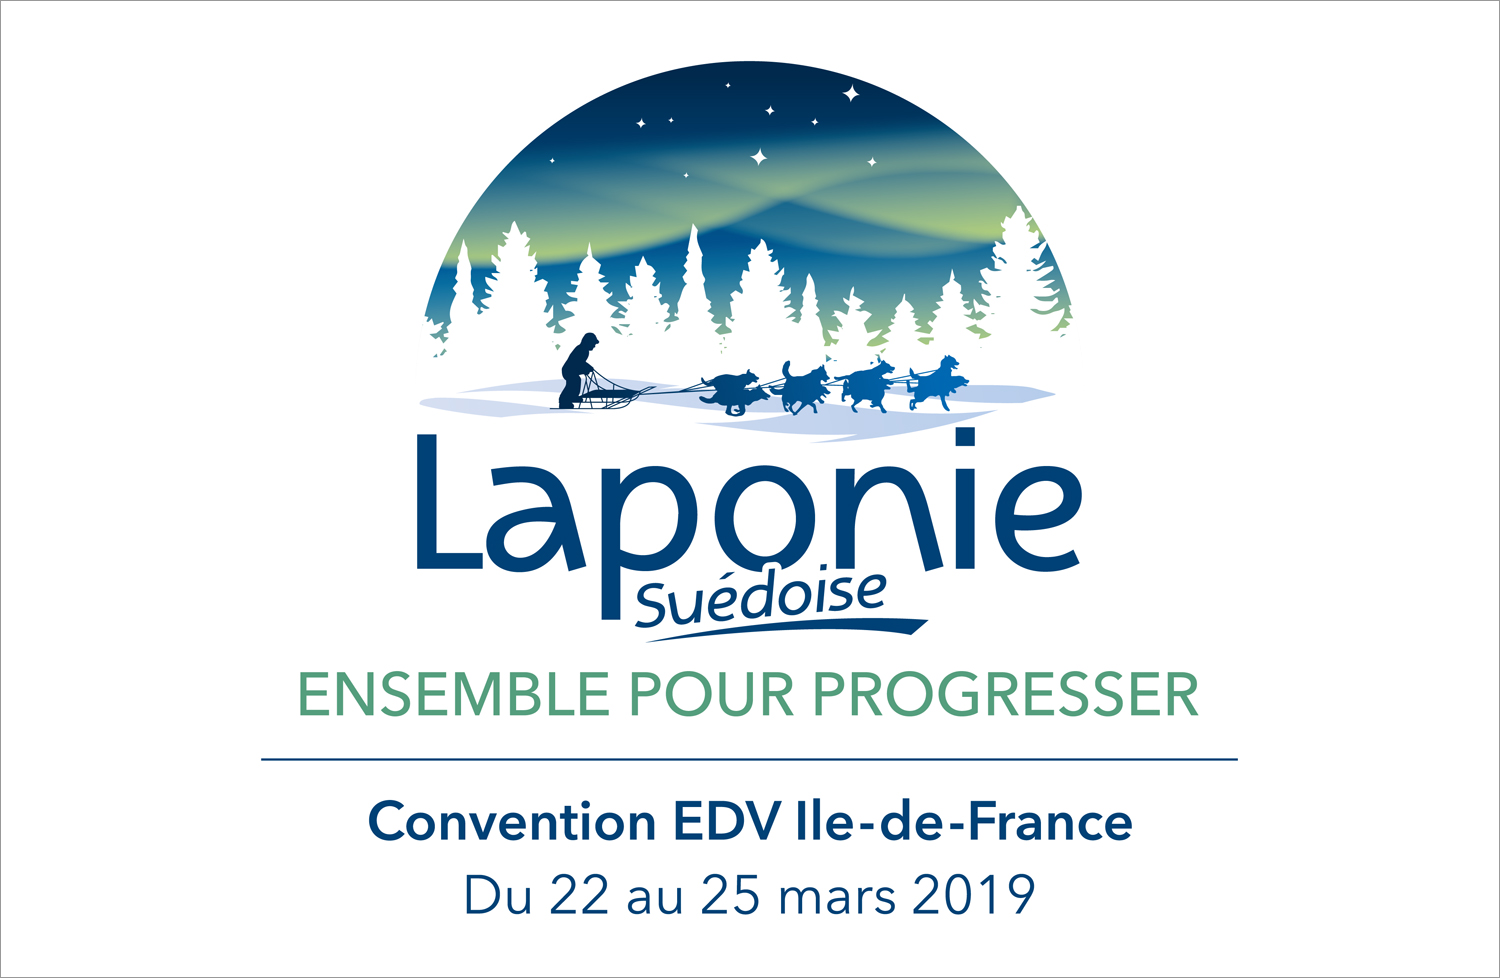 Convention 2019 EDV Ile-de-France en Laponie Suédoise